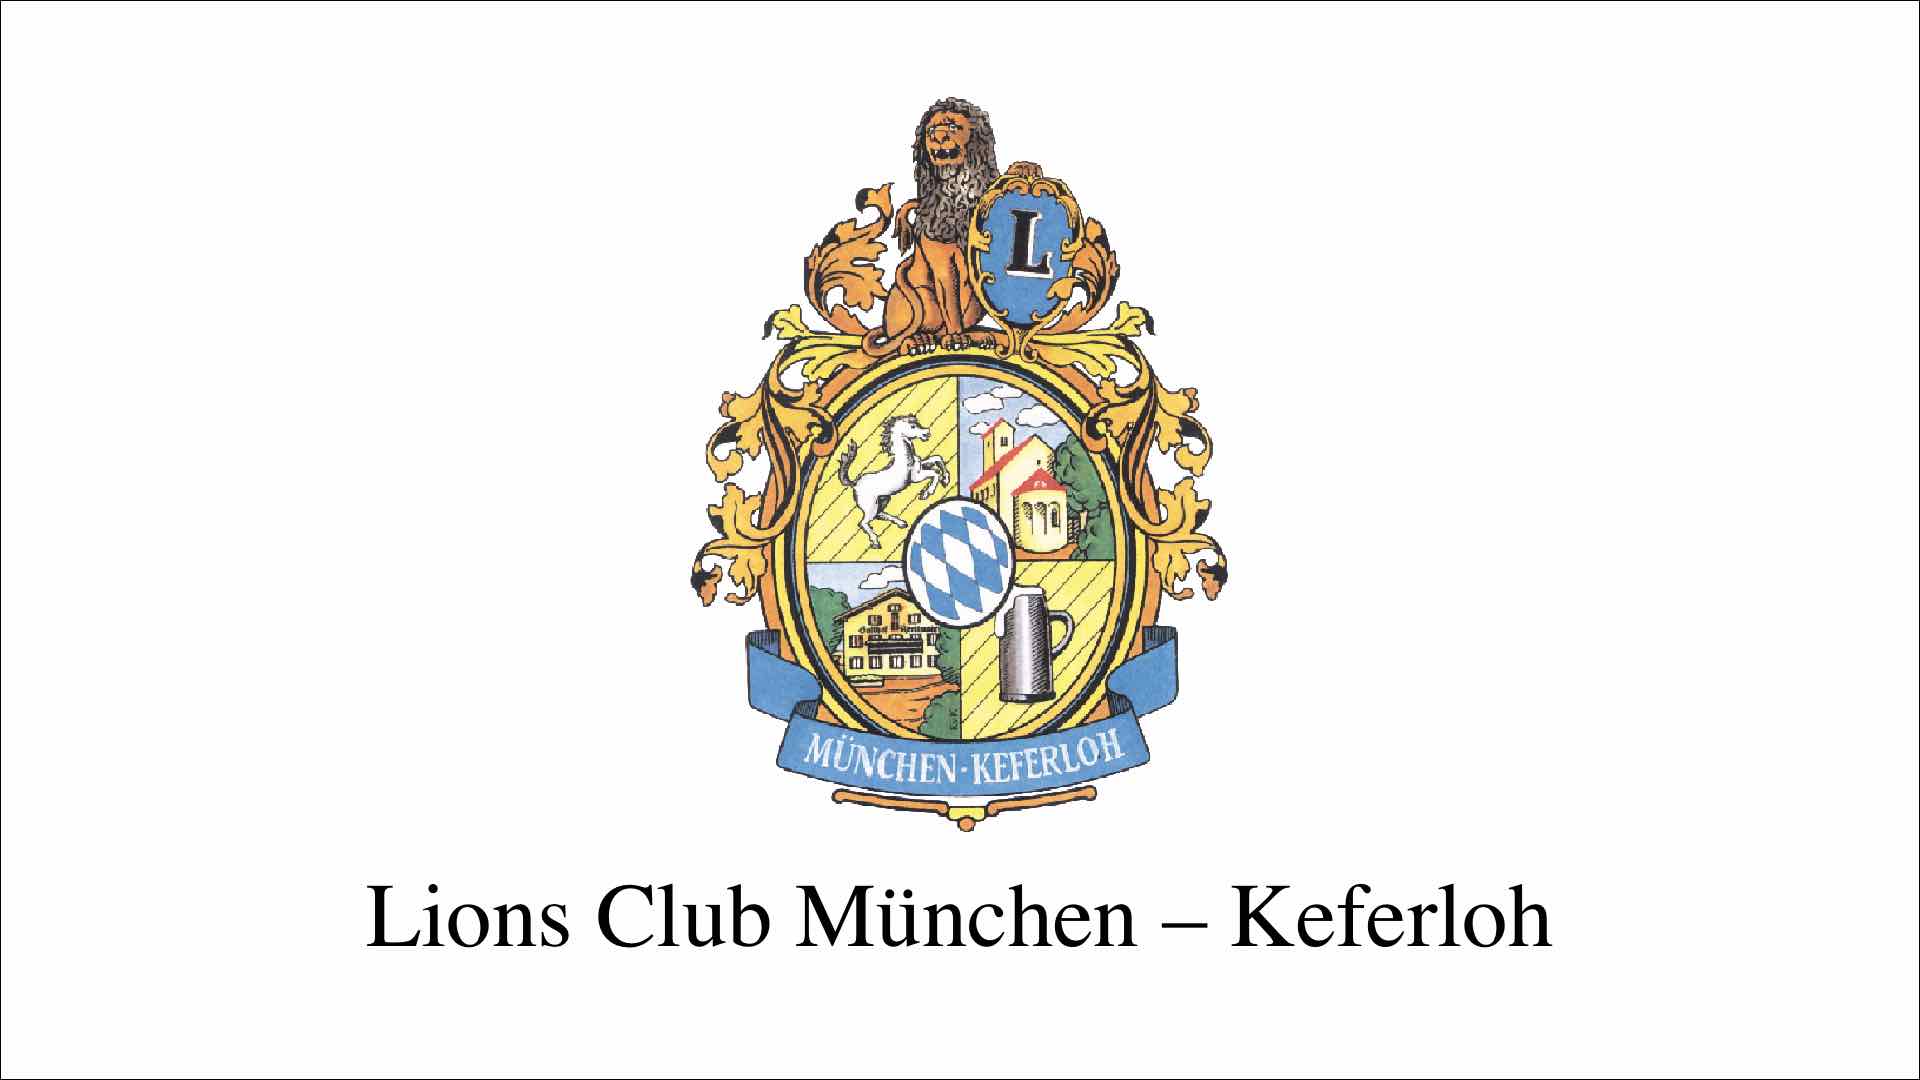 Lions Club München-Keferloh